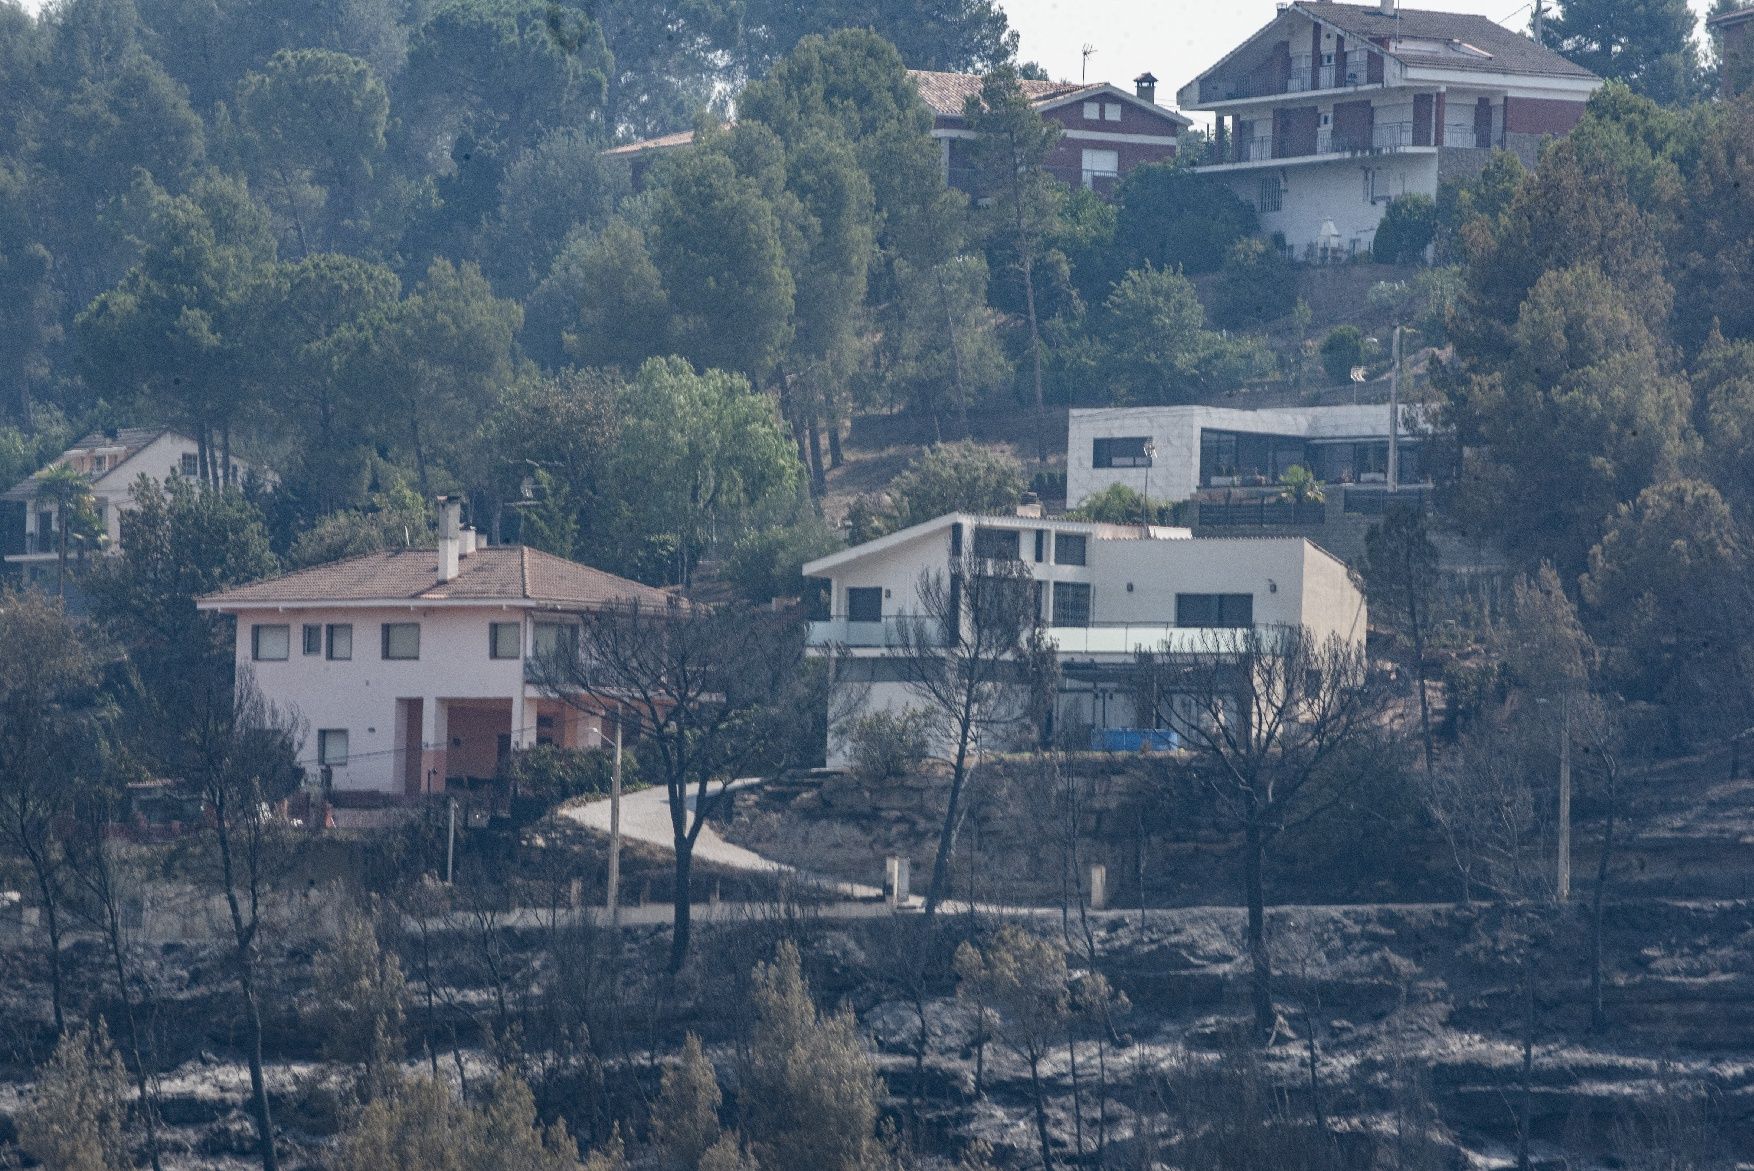 Afectació per l'incendi a la urbanització de les Brucardes